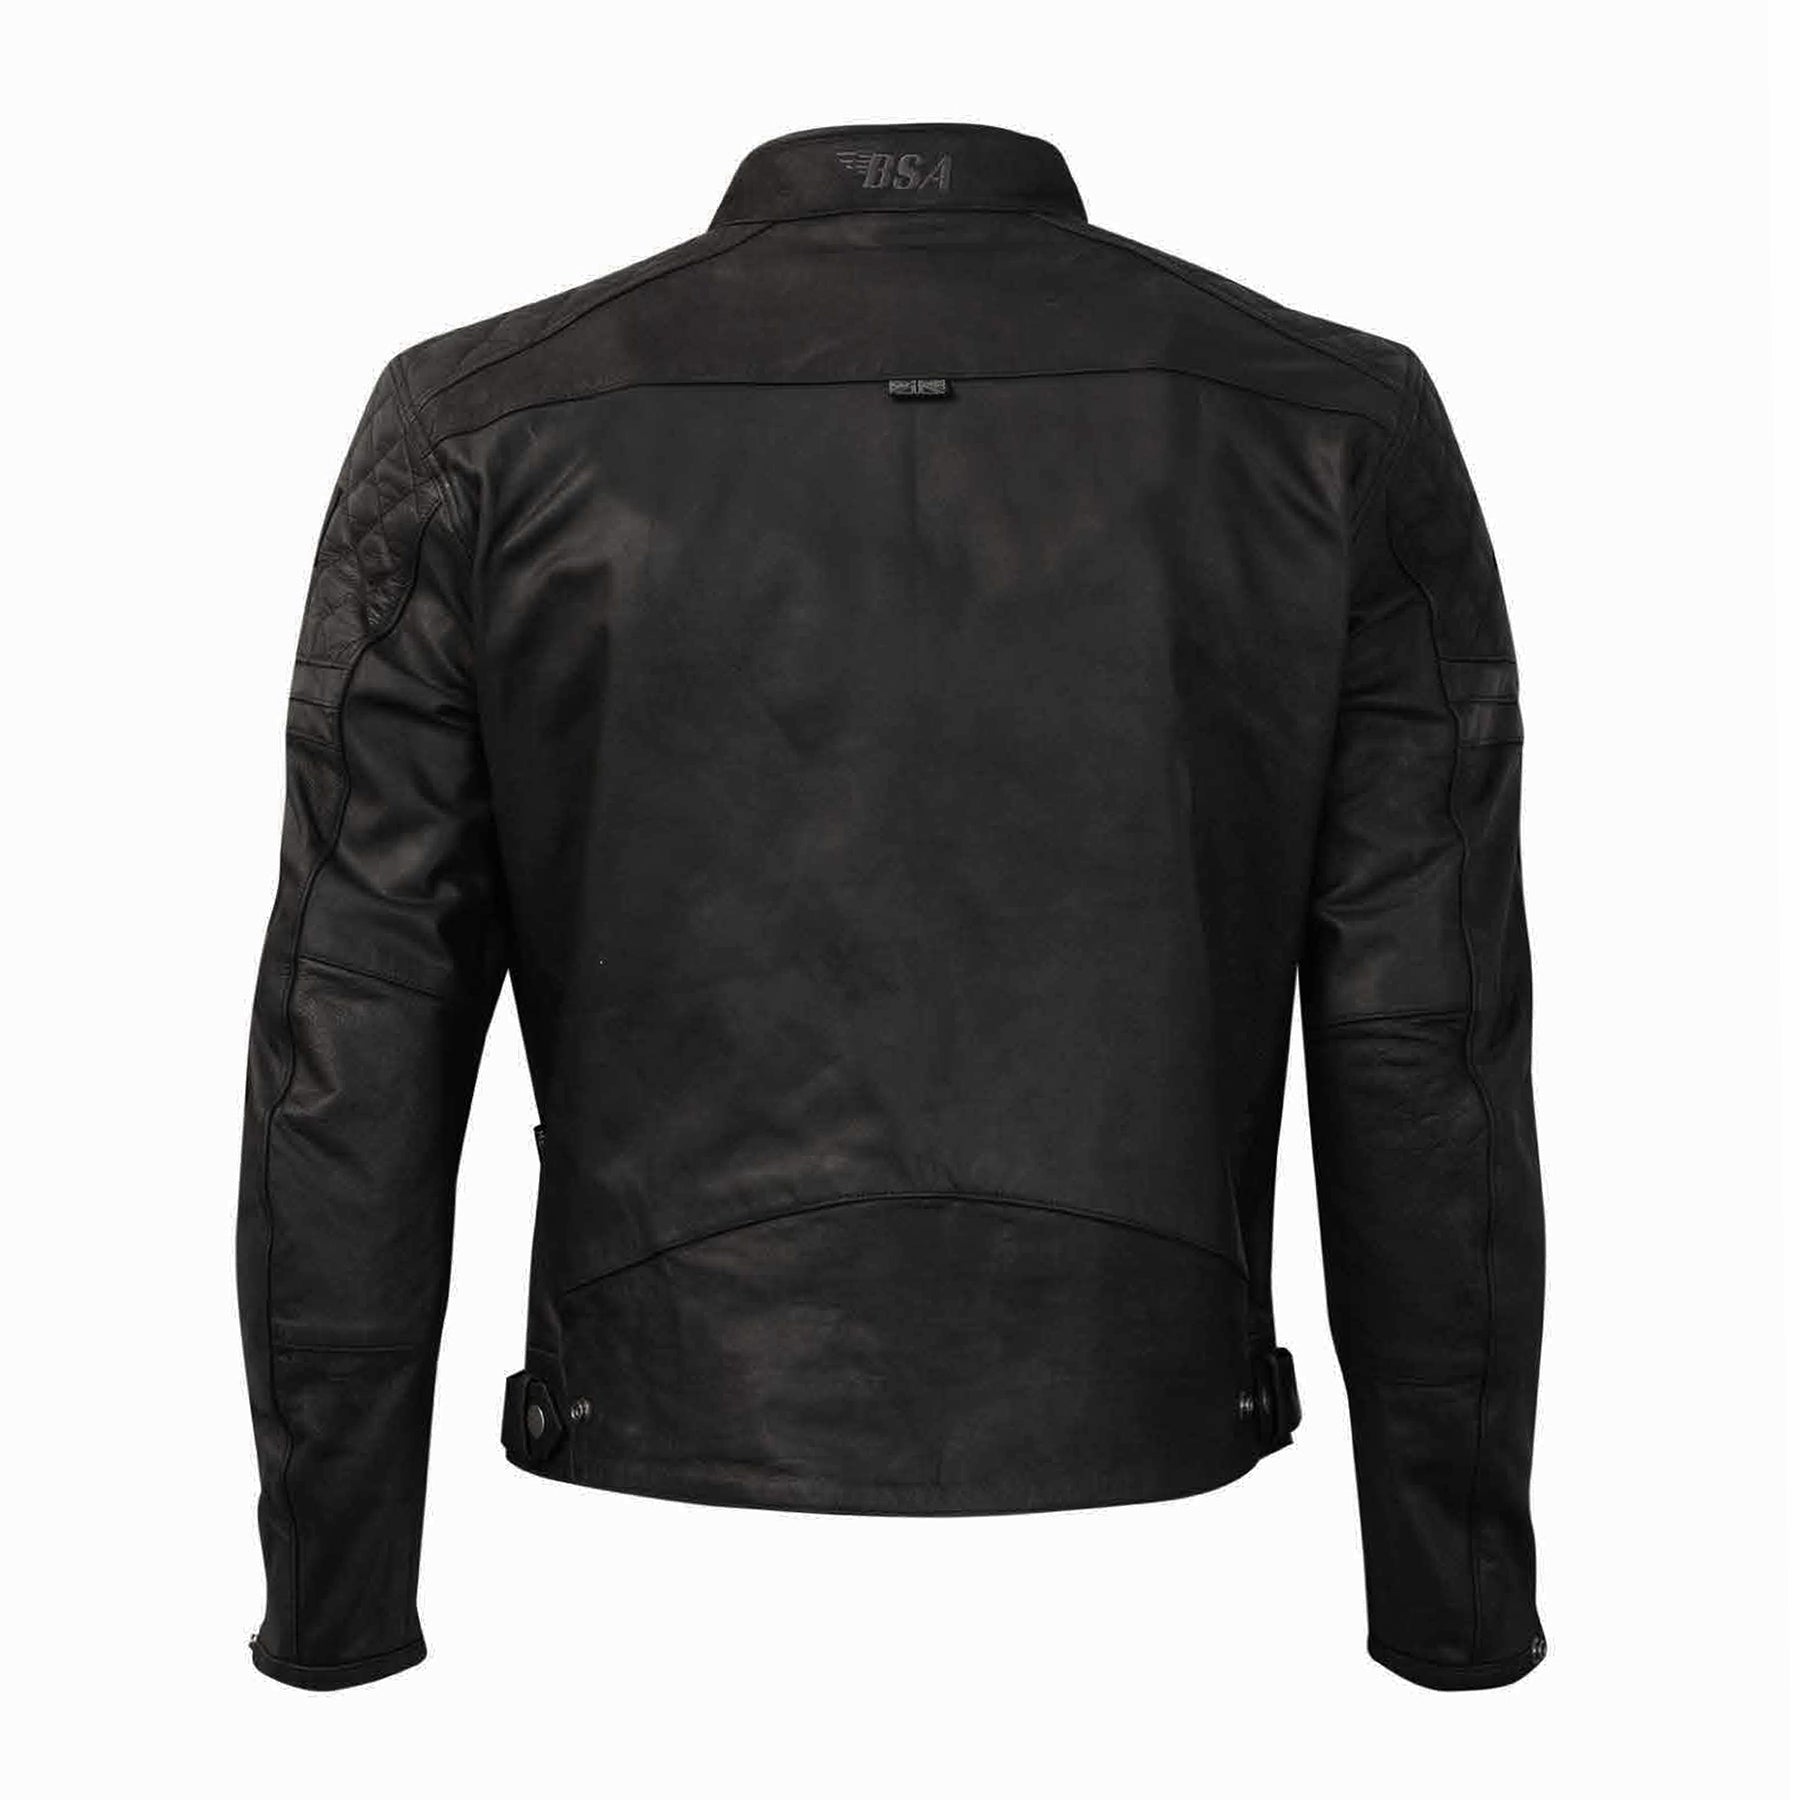 Liberation Leather Jacket - Black